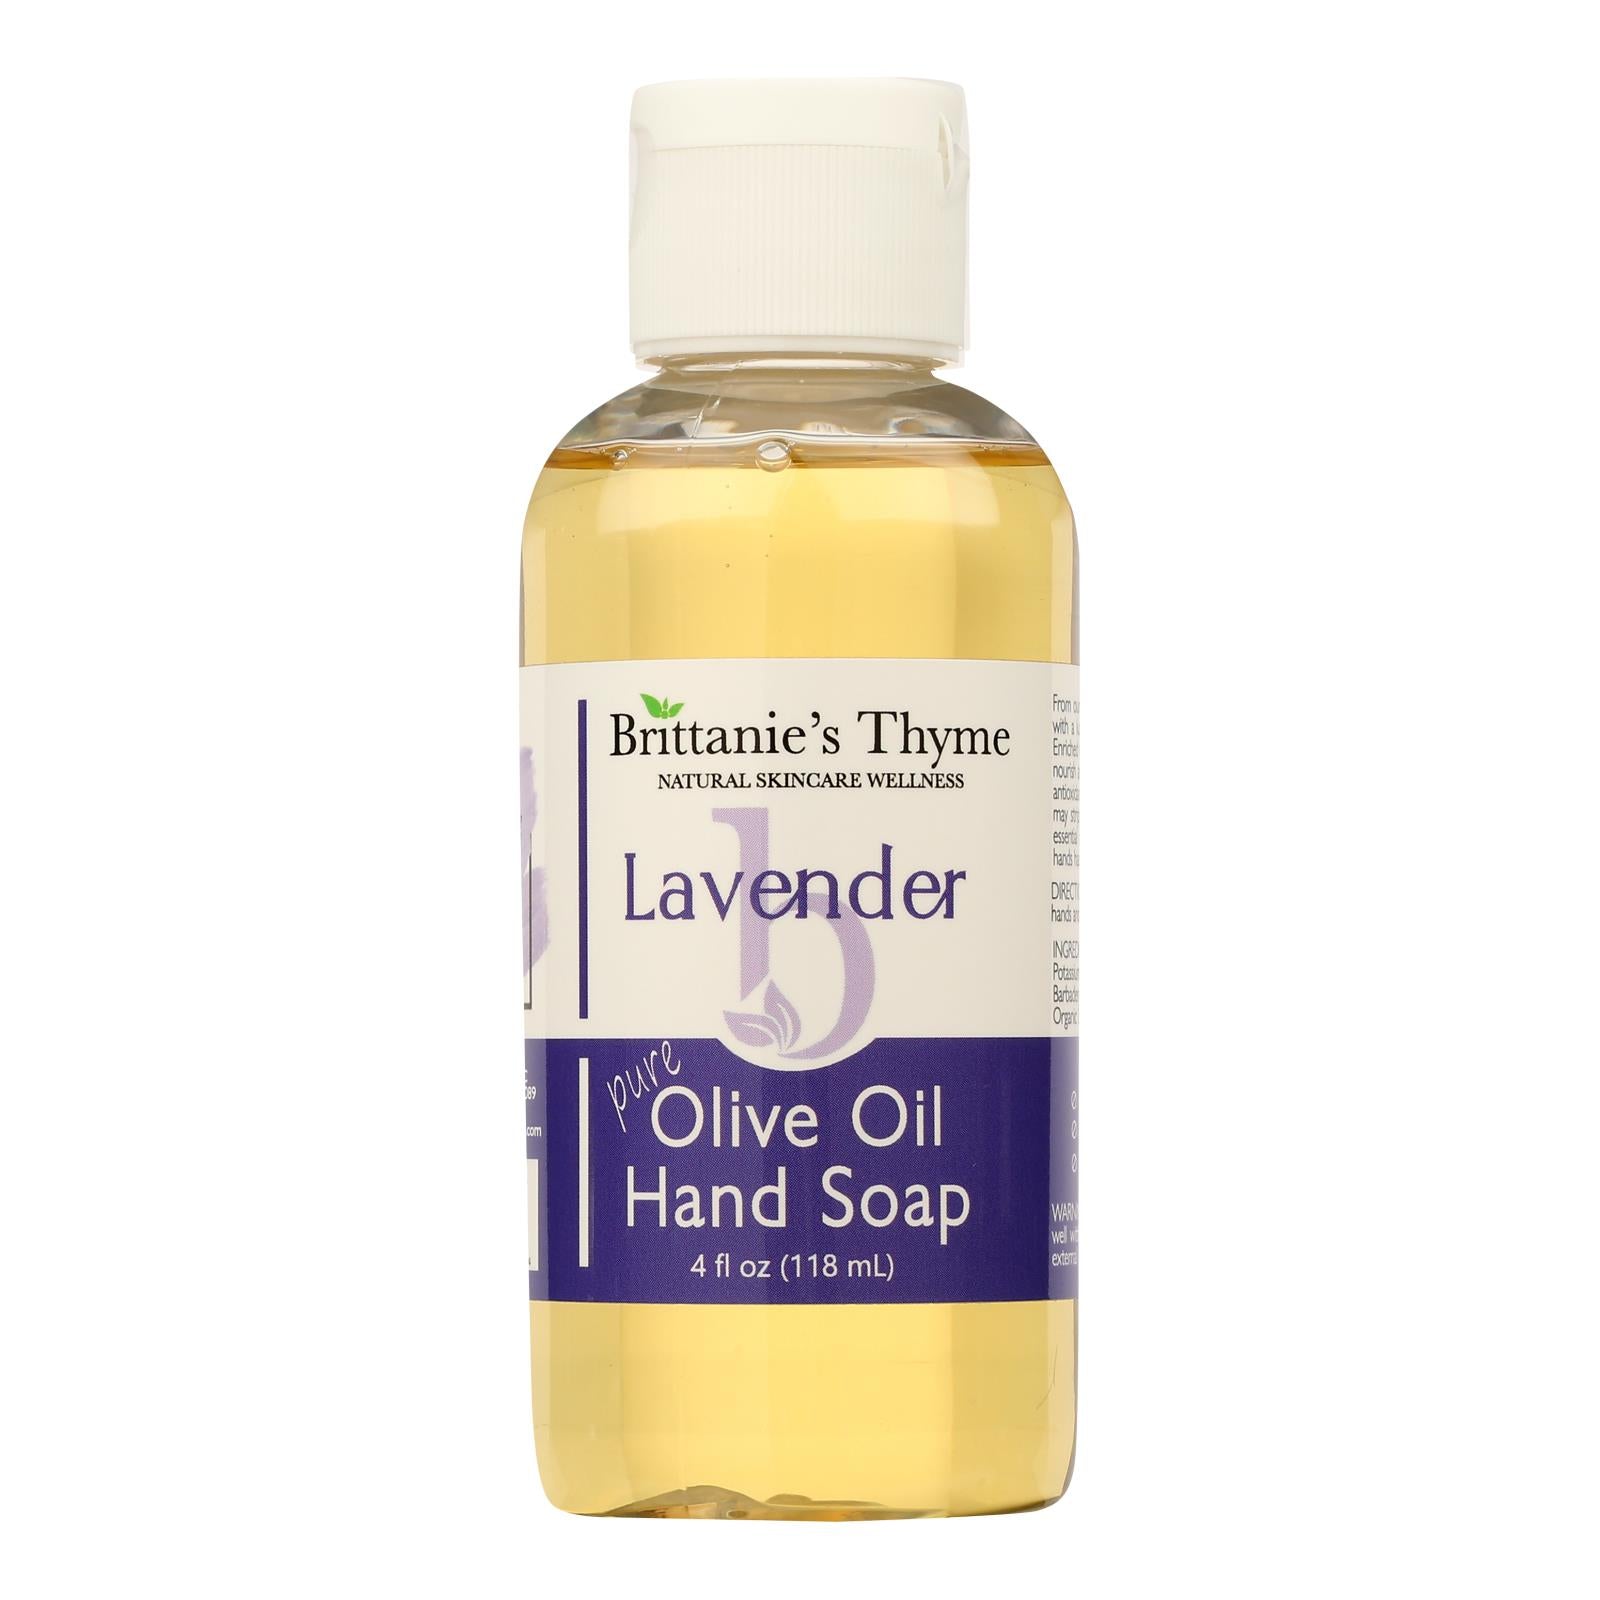 Brittanie's Thyme - Hand Soap Liquid Lavender - 1 Each-4 Fz